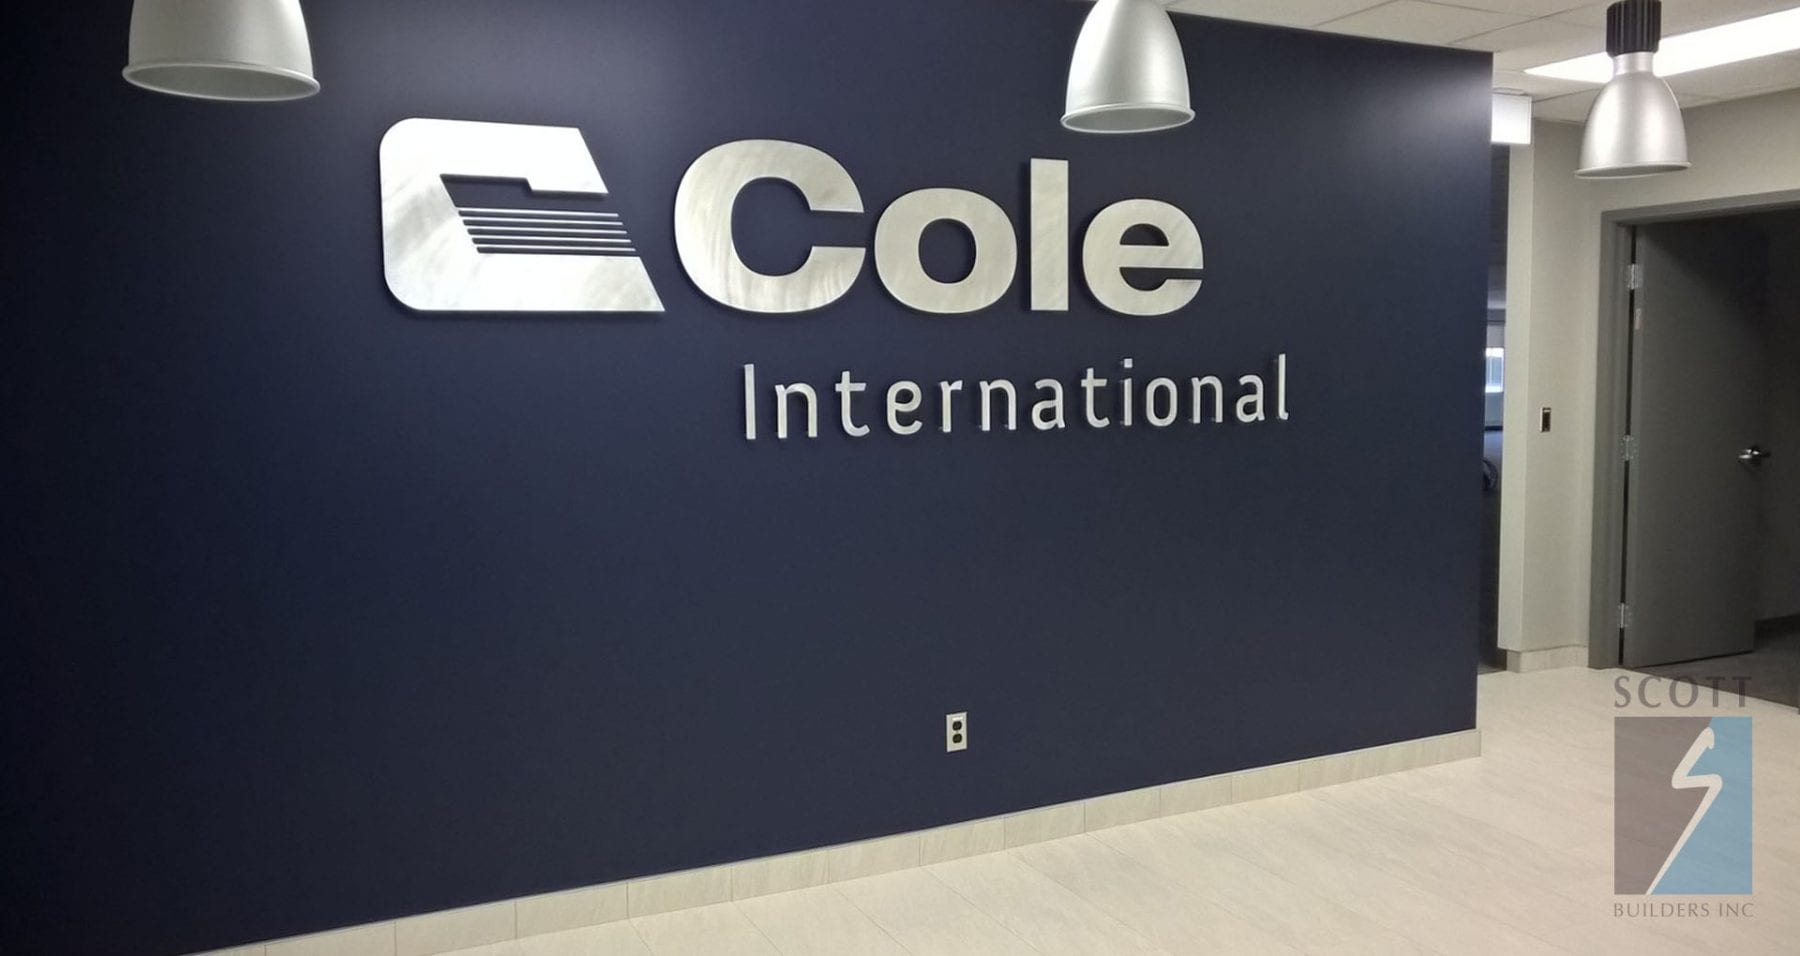 Cole-International-WP_20150813_15_44_04_Pro-scaled